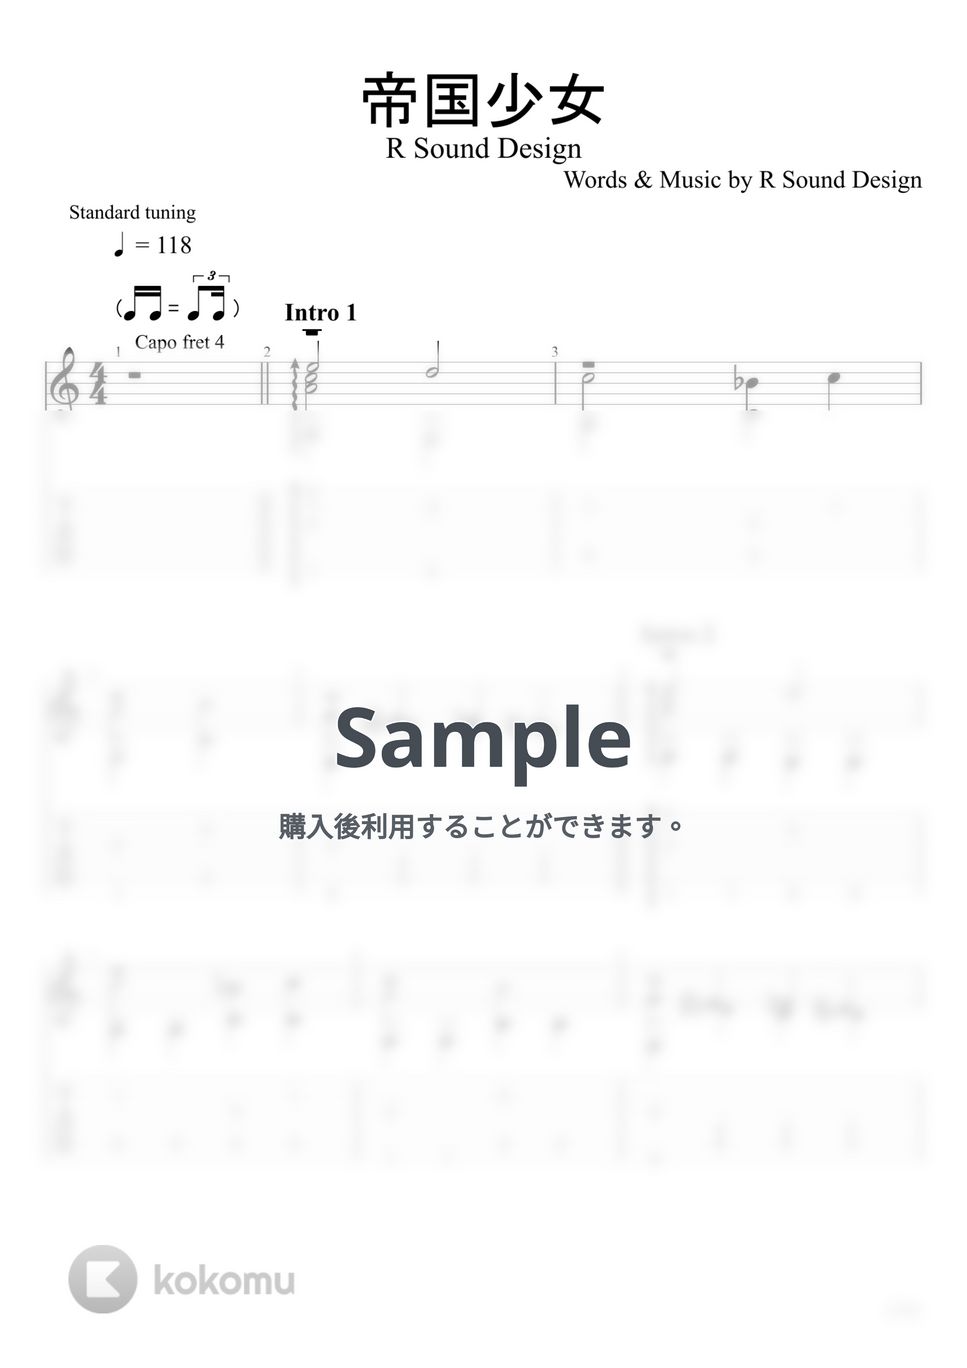 R Sound Design - 帝国少女 (ソロギター) by u3danchou